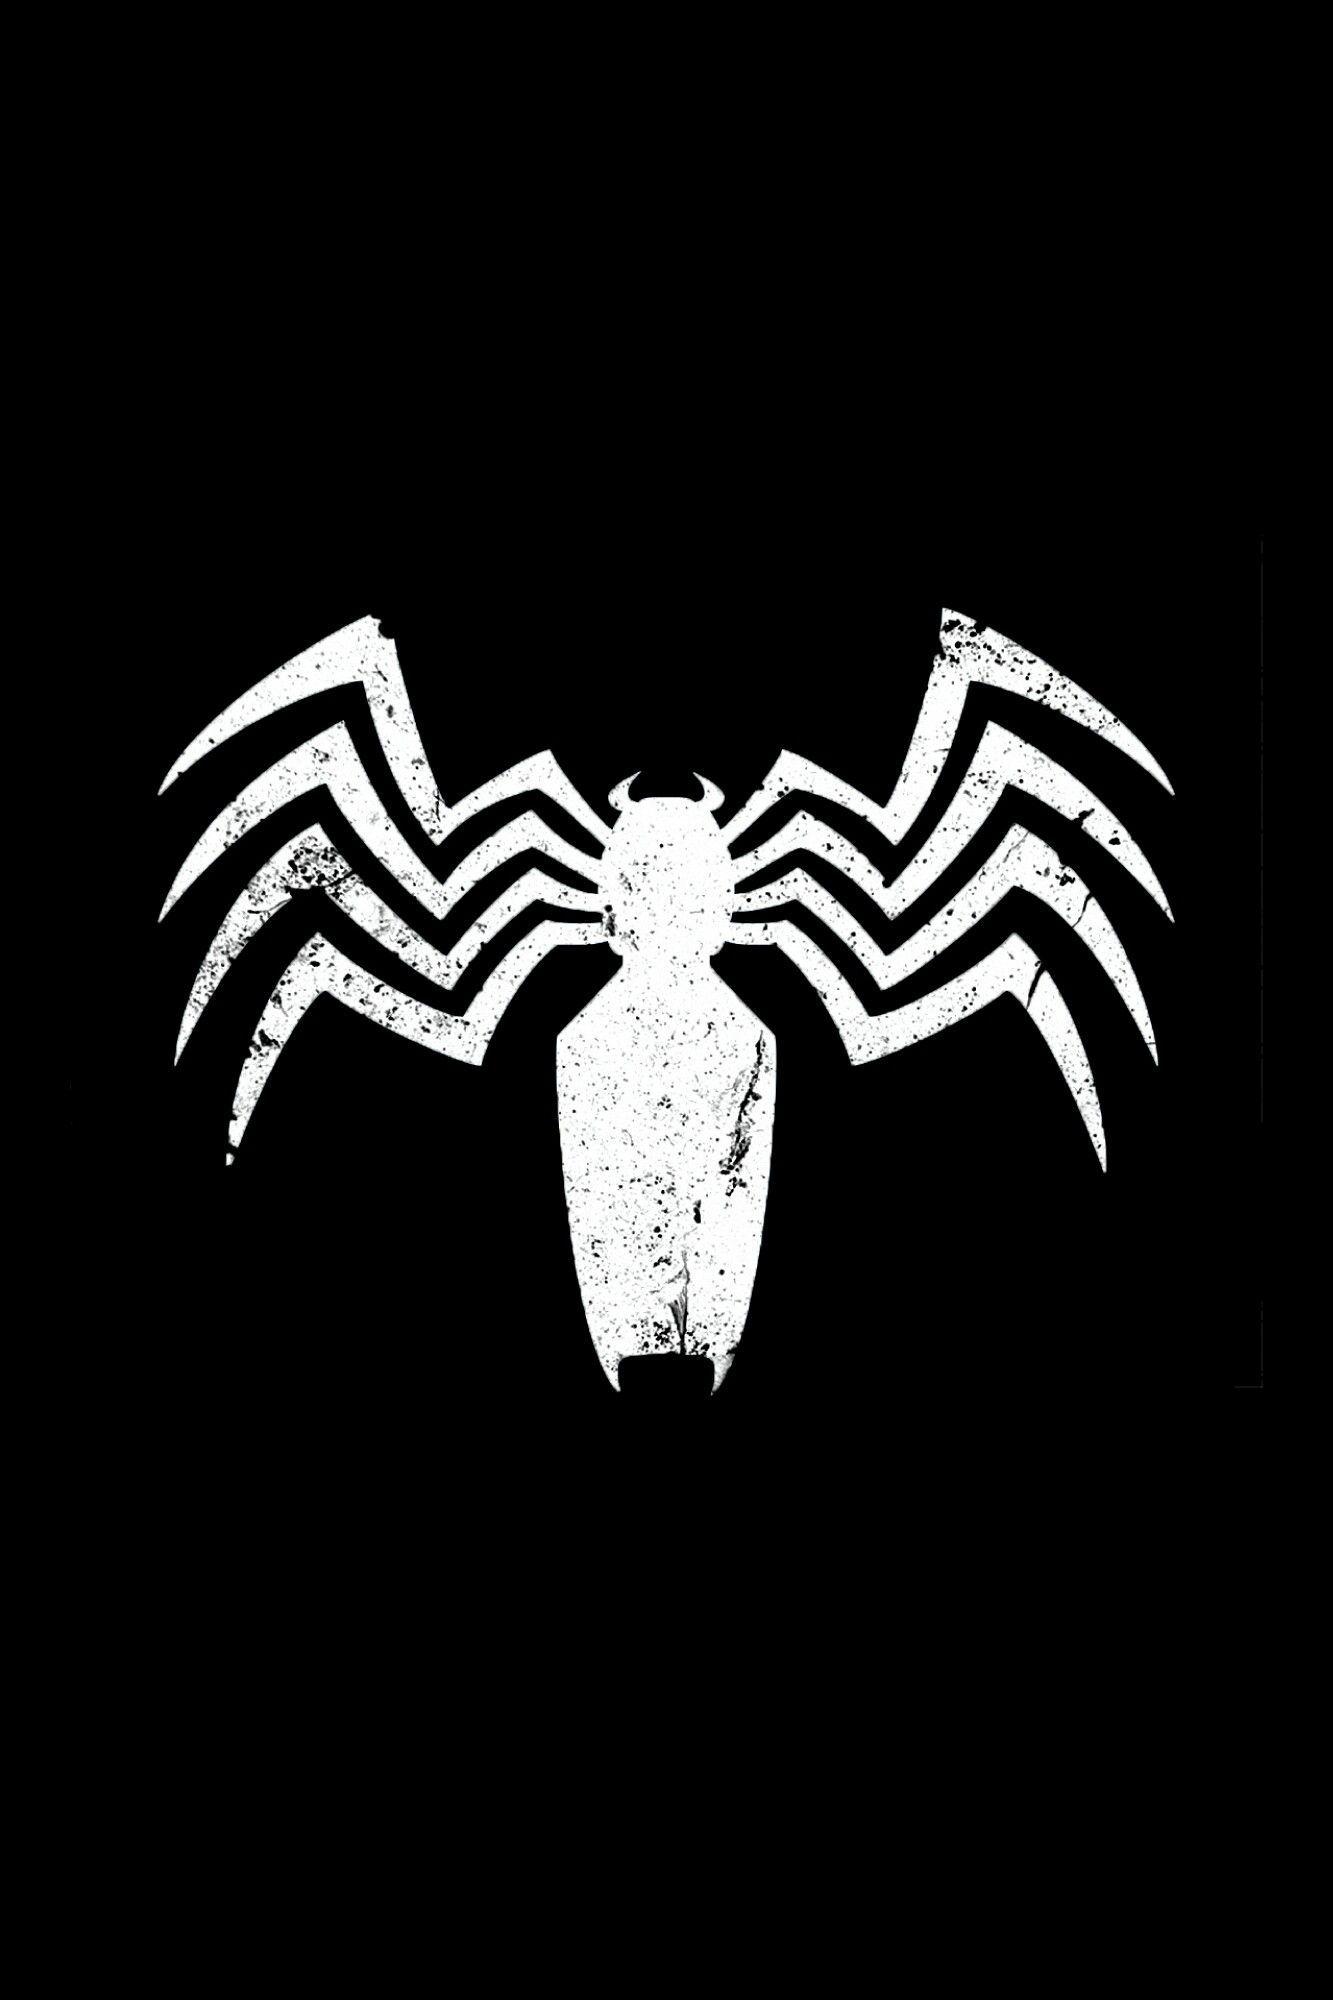 Spider-Man Venom Logo - Venom logo | The Amazing Spider-Man | Spiderman, Venom, Venom comics